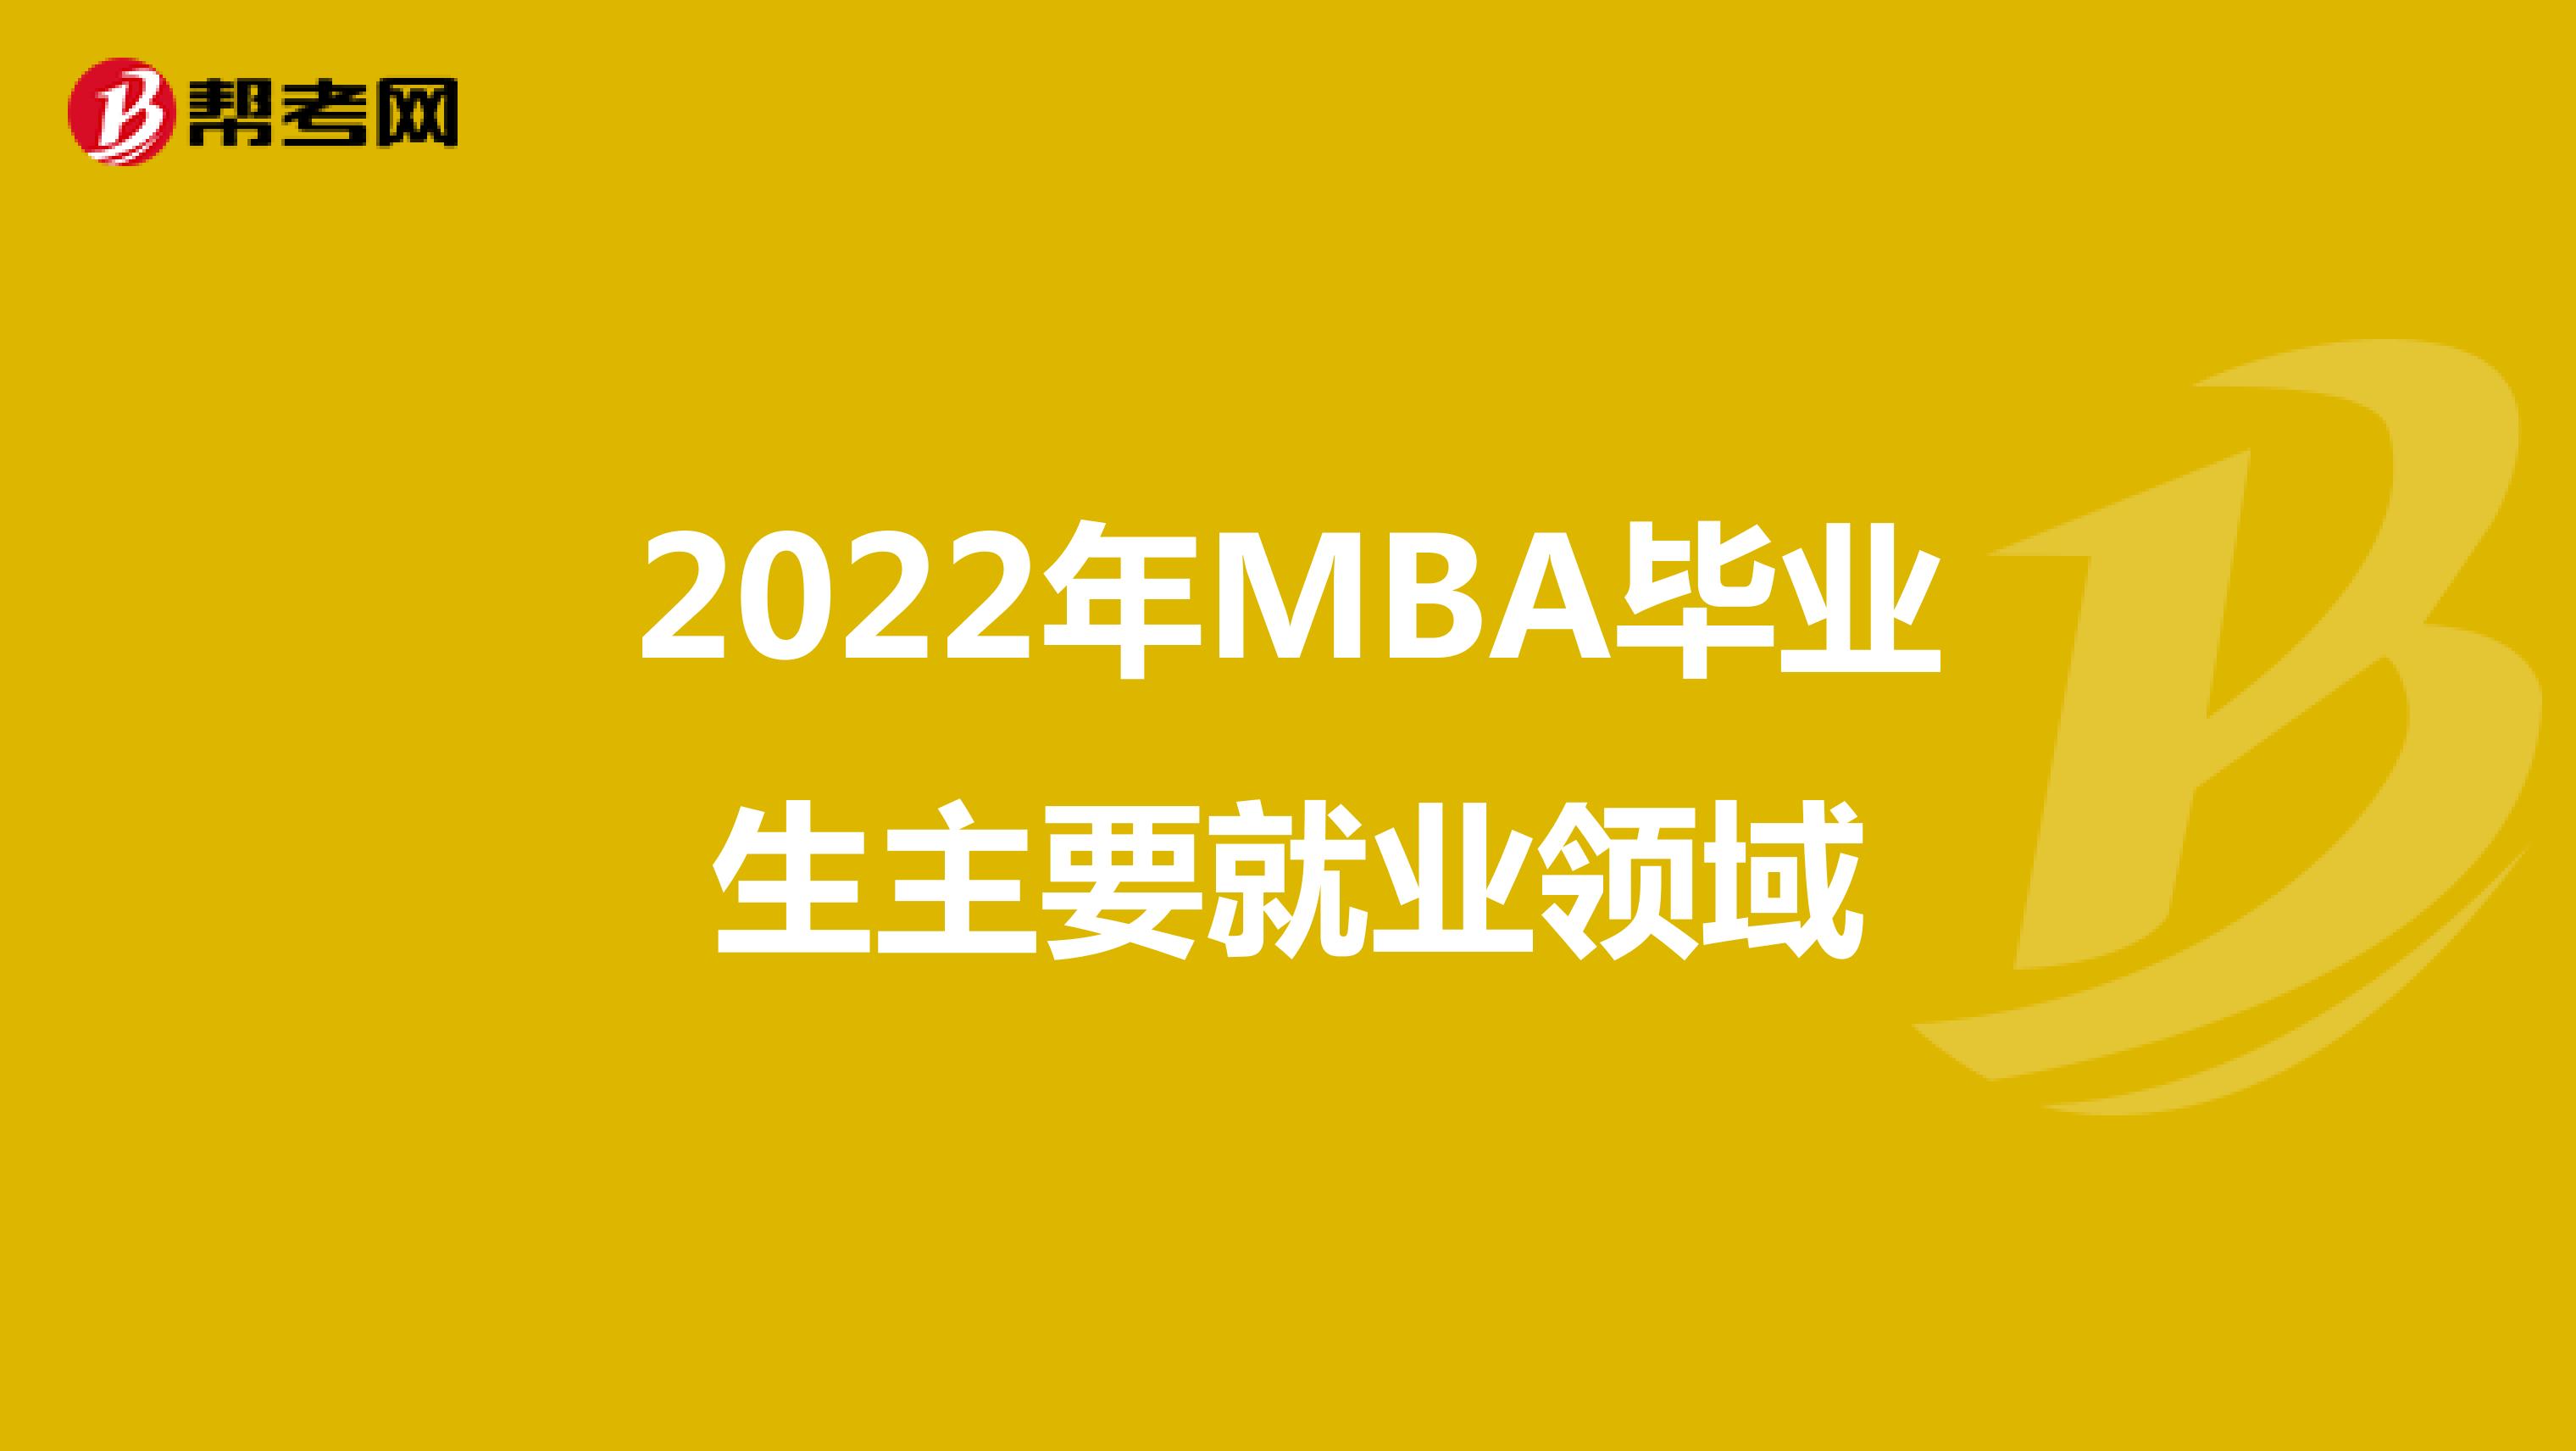 2022年MBA毕业生主要就业领域